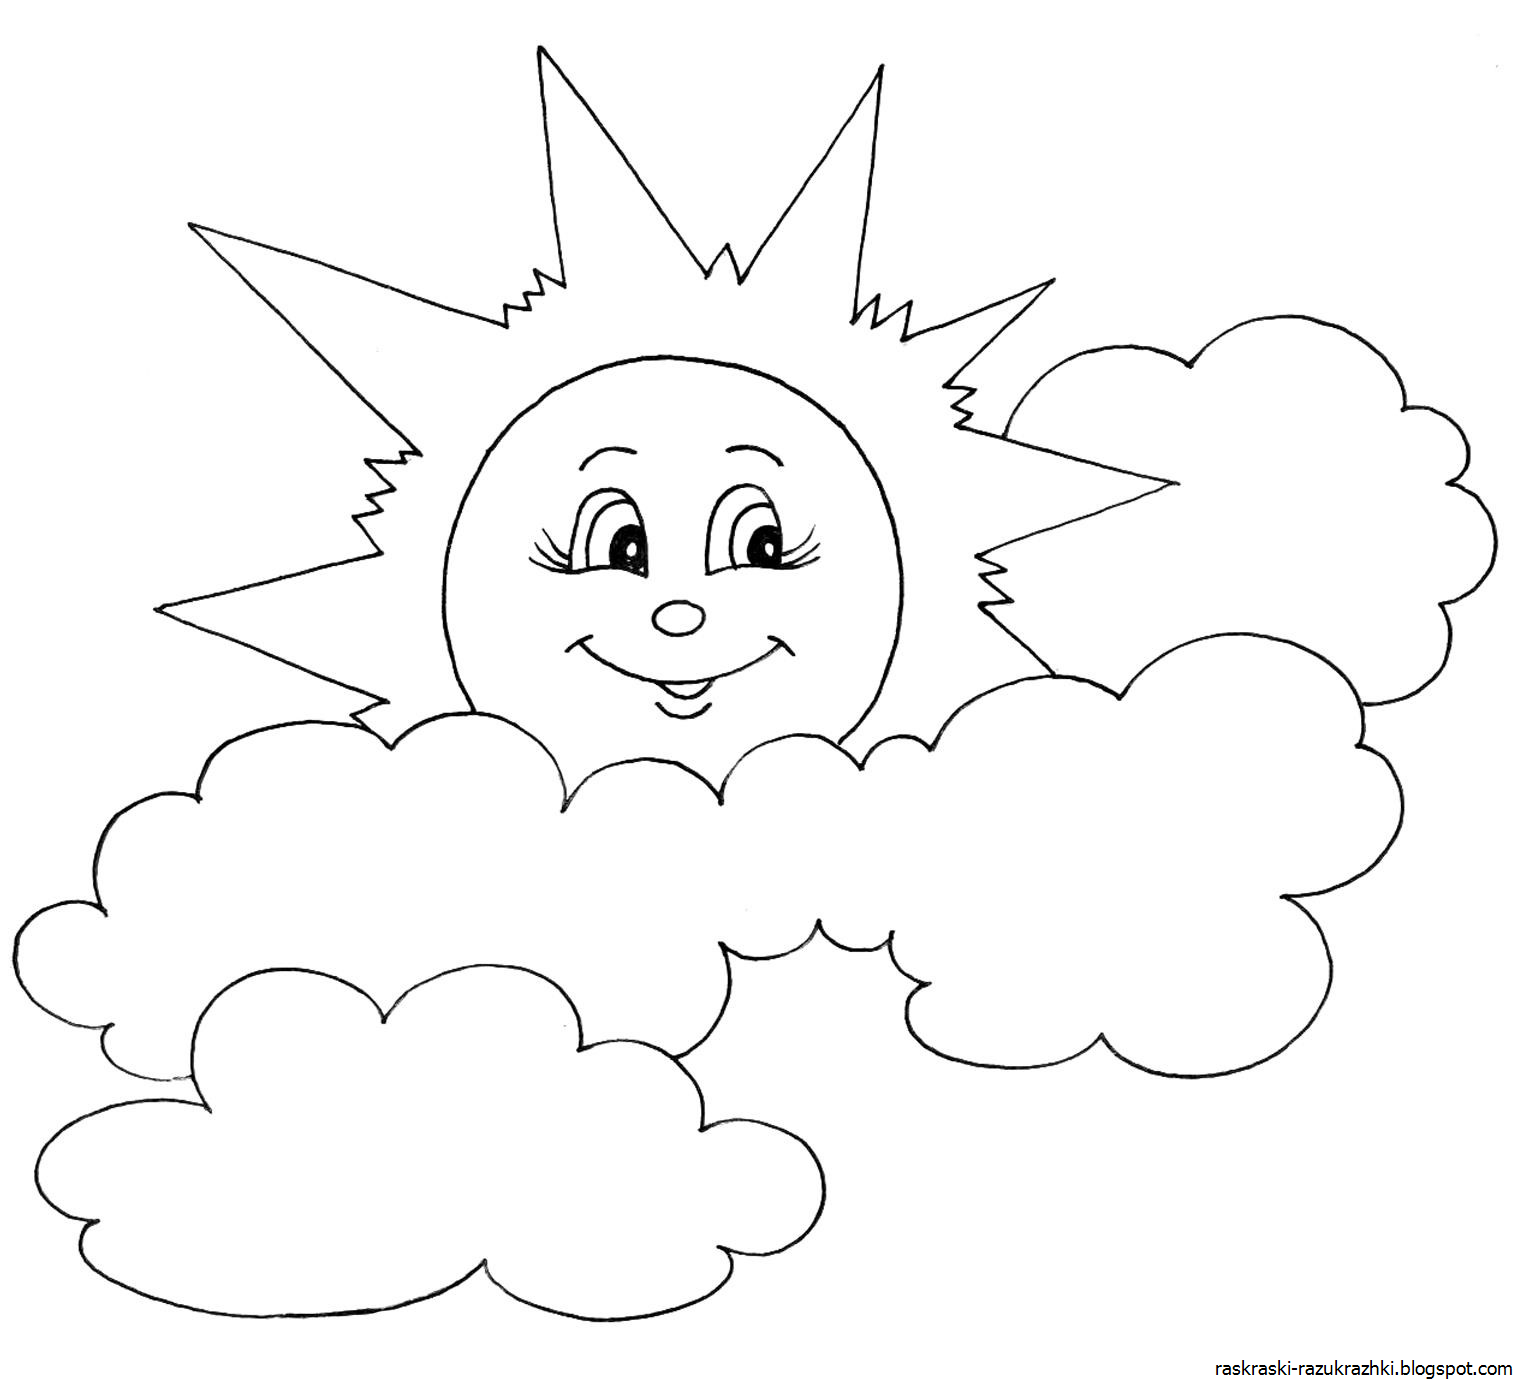 Раскраска солнышко для рисования с детьми с улыбкой и лучиками и без, облаками. распечатать